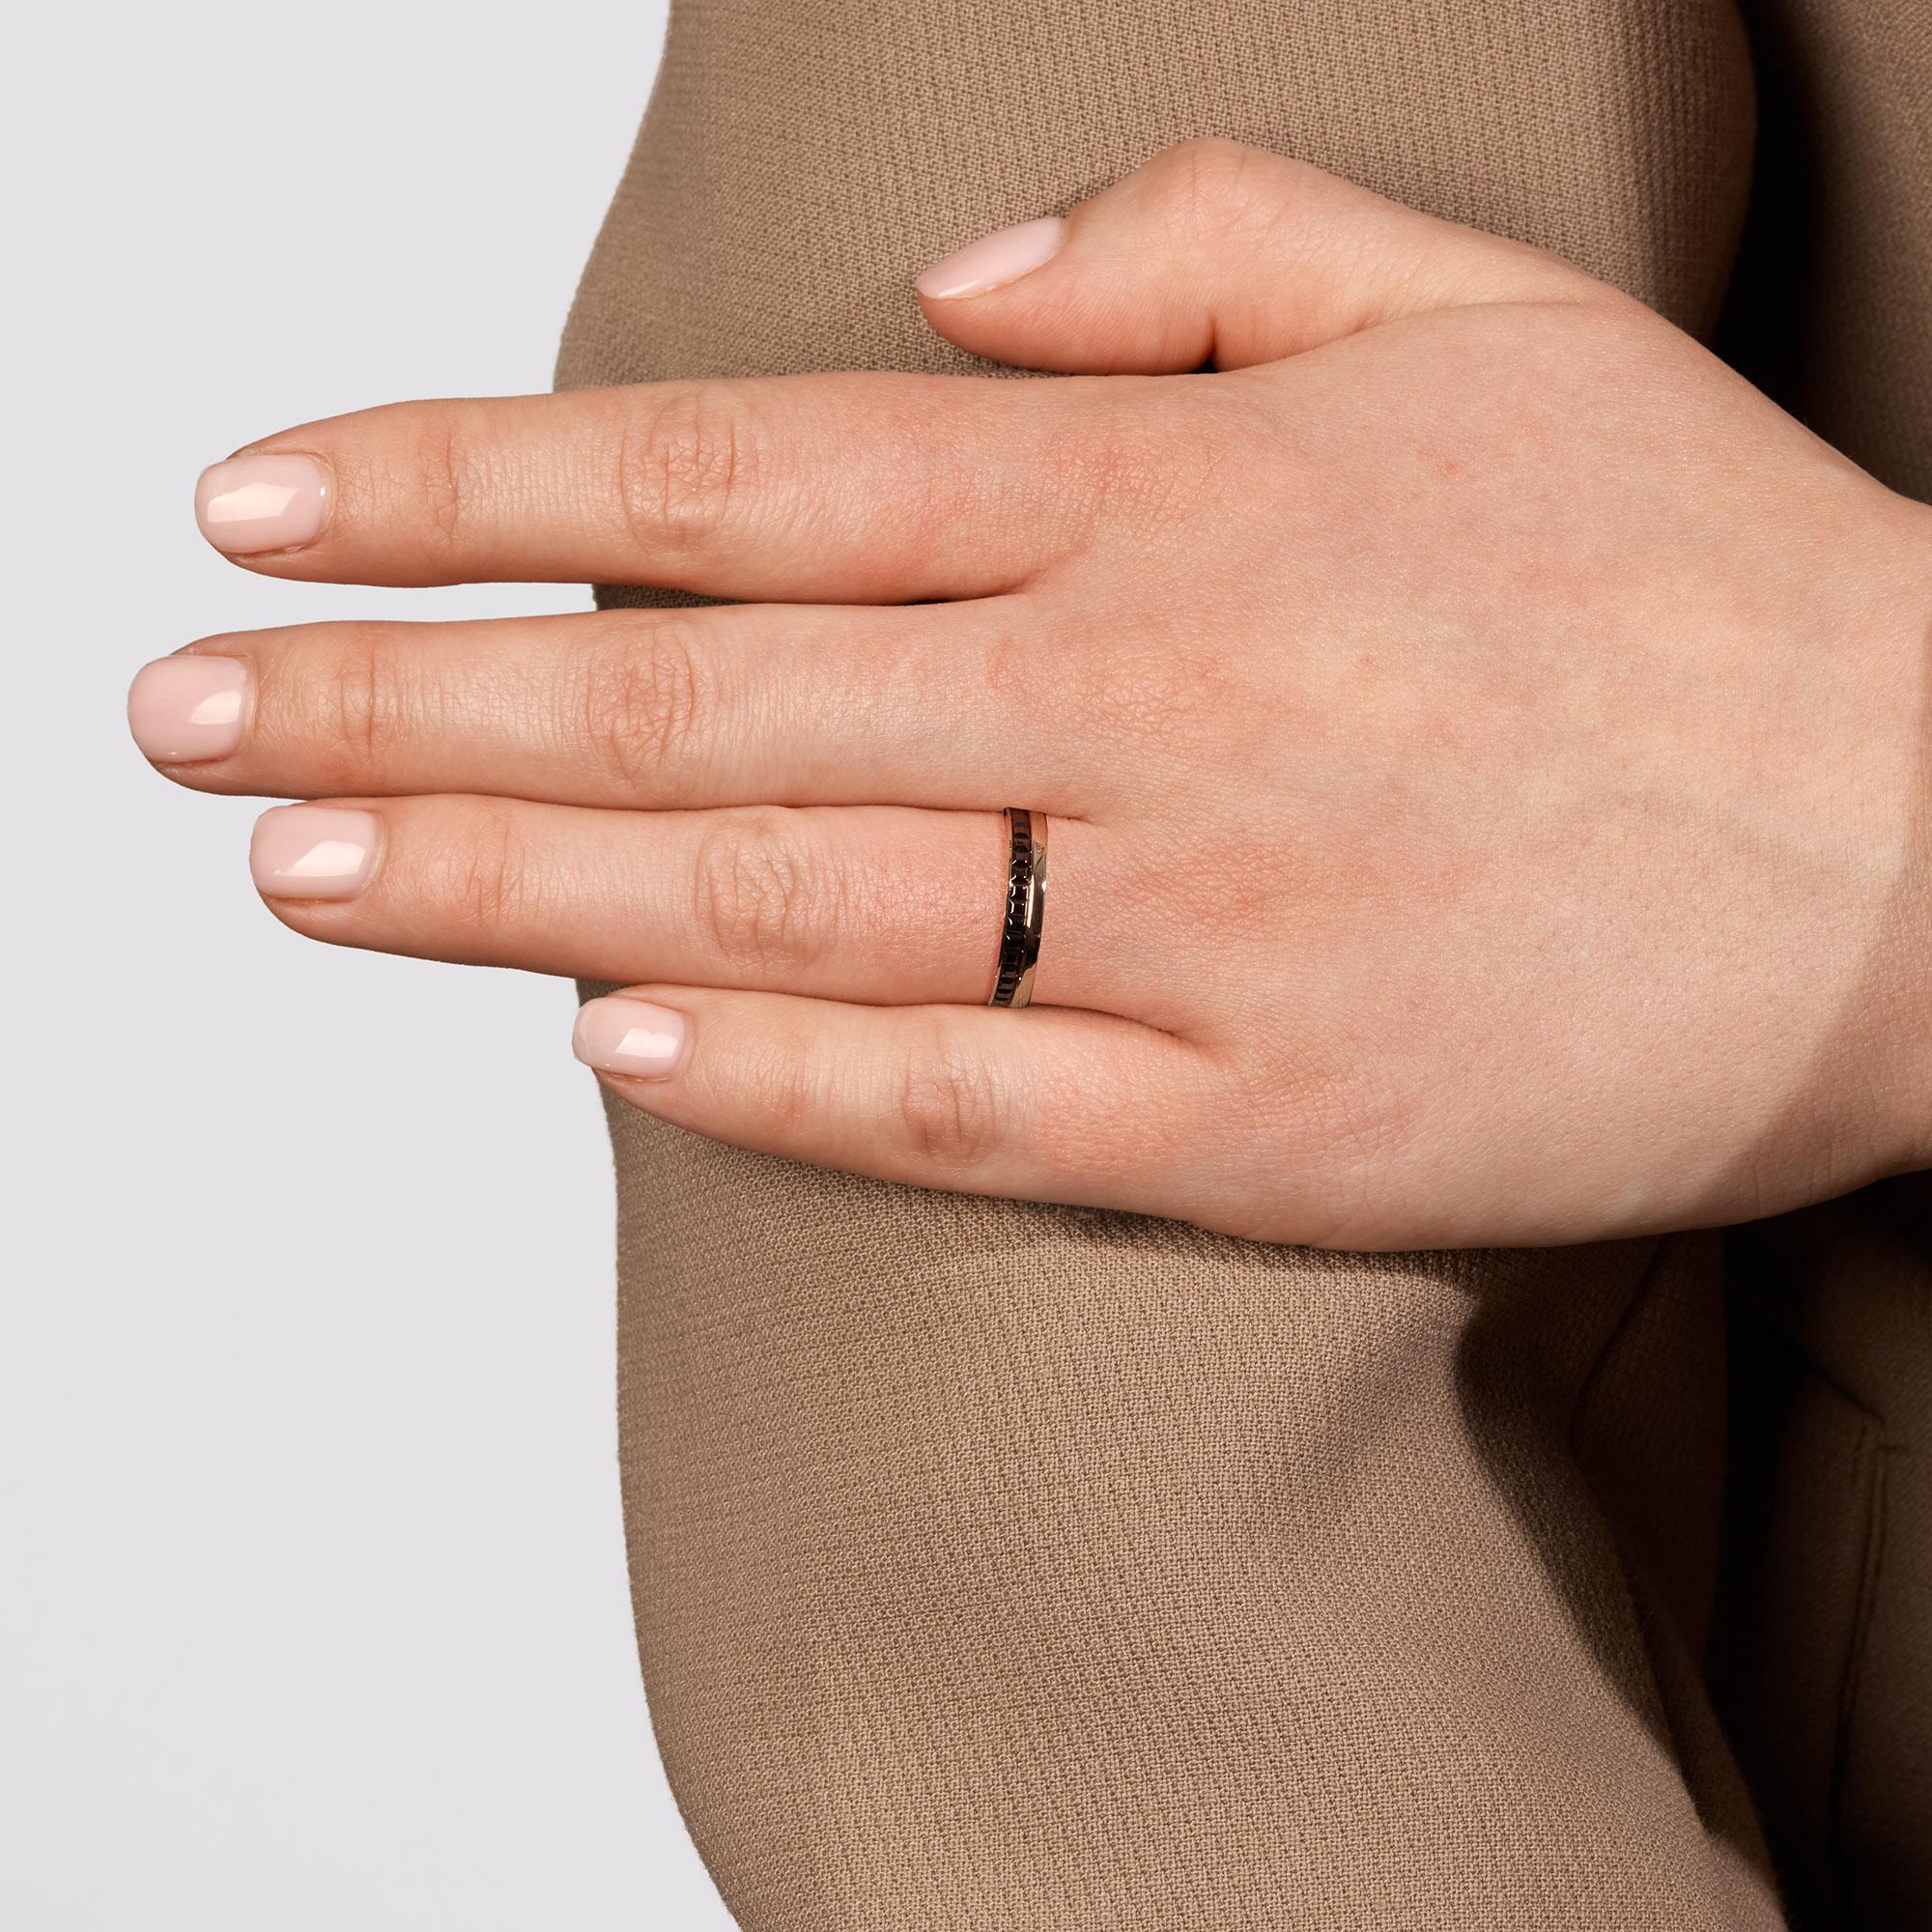 Dieser Ring von Boucheron stammt aus der Quatre-Kollektion und zeichnet sich durch seine braune PVD-Beschichtung mit 18 Karat Roségold aus. 

UVP	£1,720
ITEM-ZUSTAND	Ausgezeichnet
HERSTELLER	Boucheron
MODELL	Quatre
GENDER	Frauen
UK